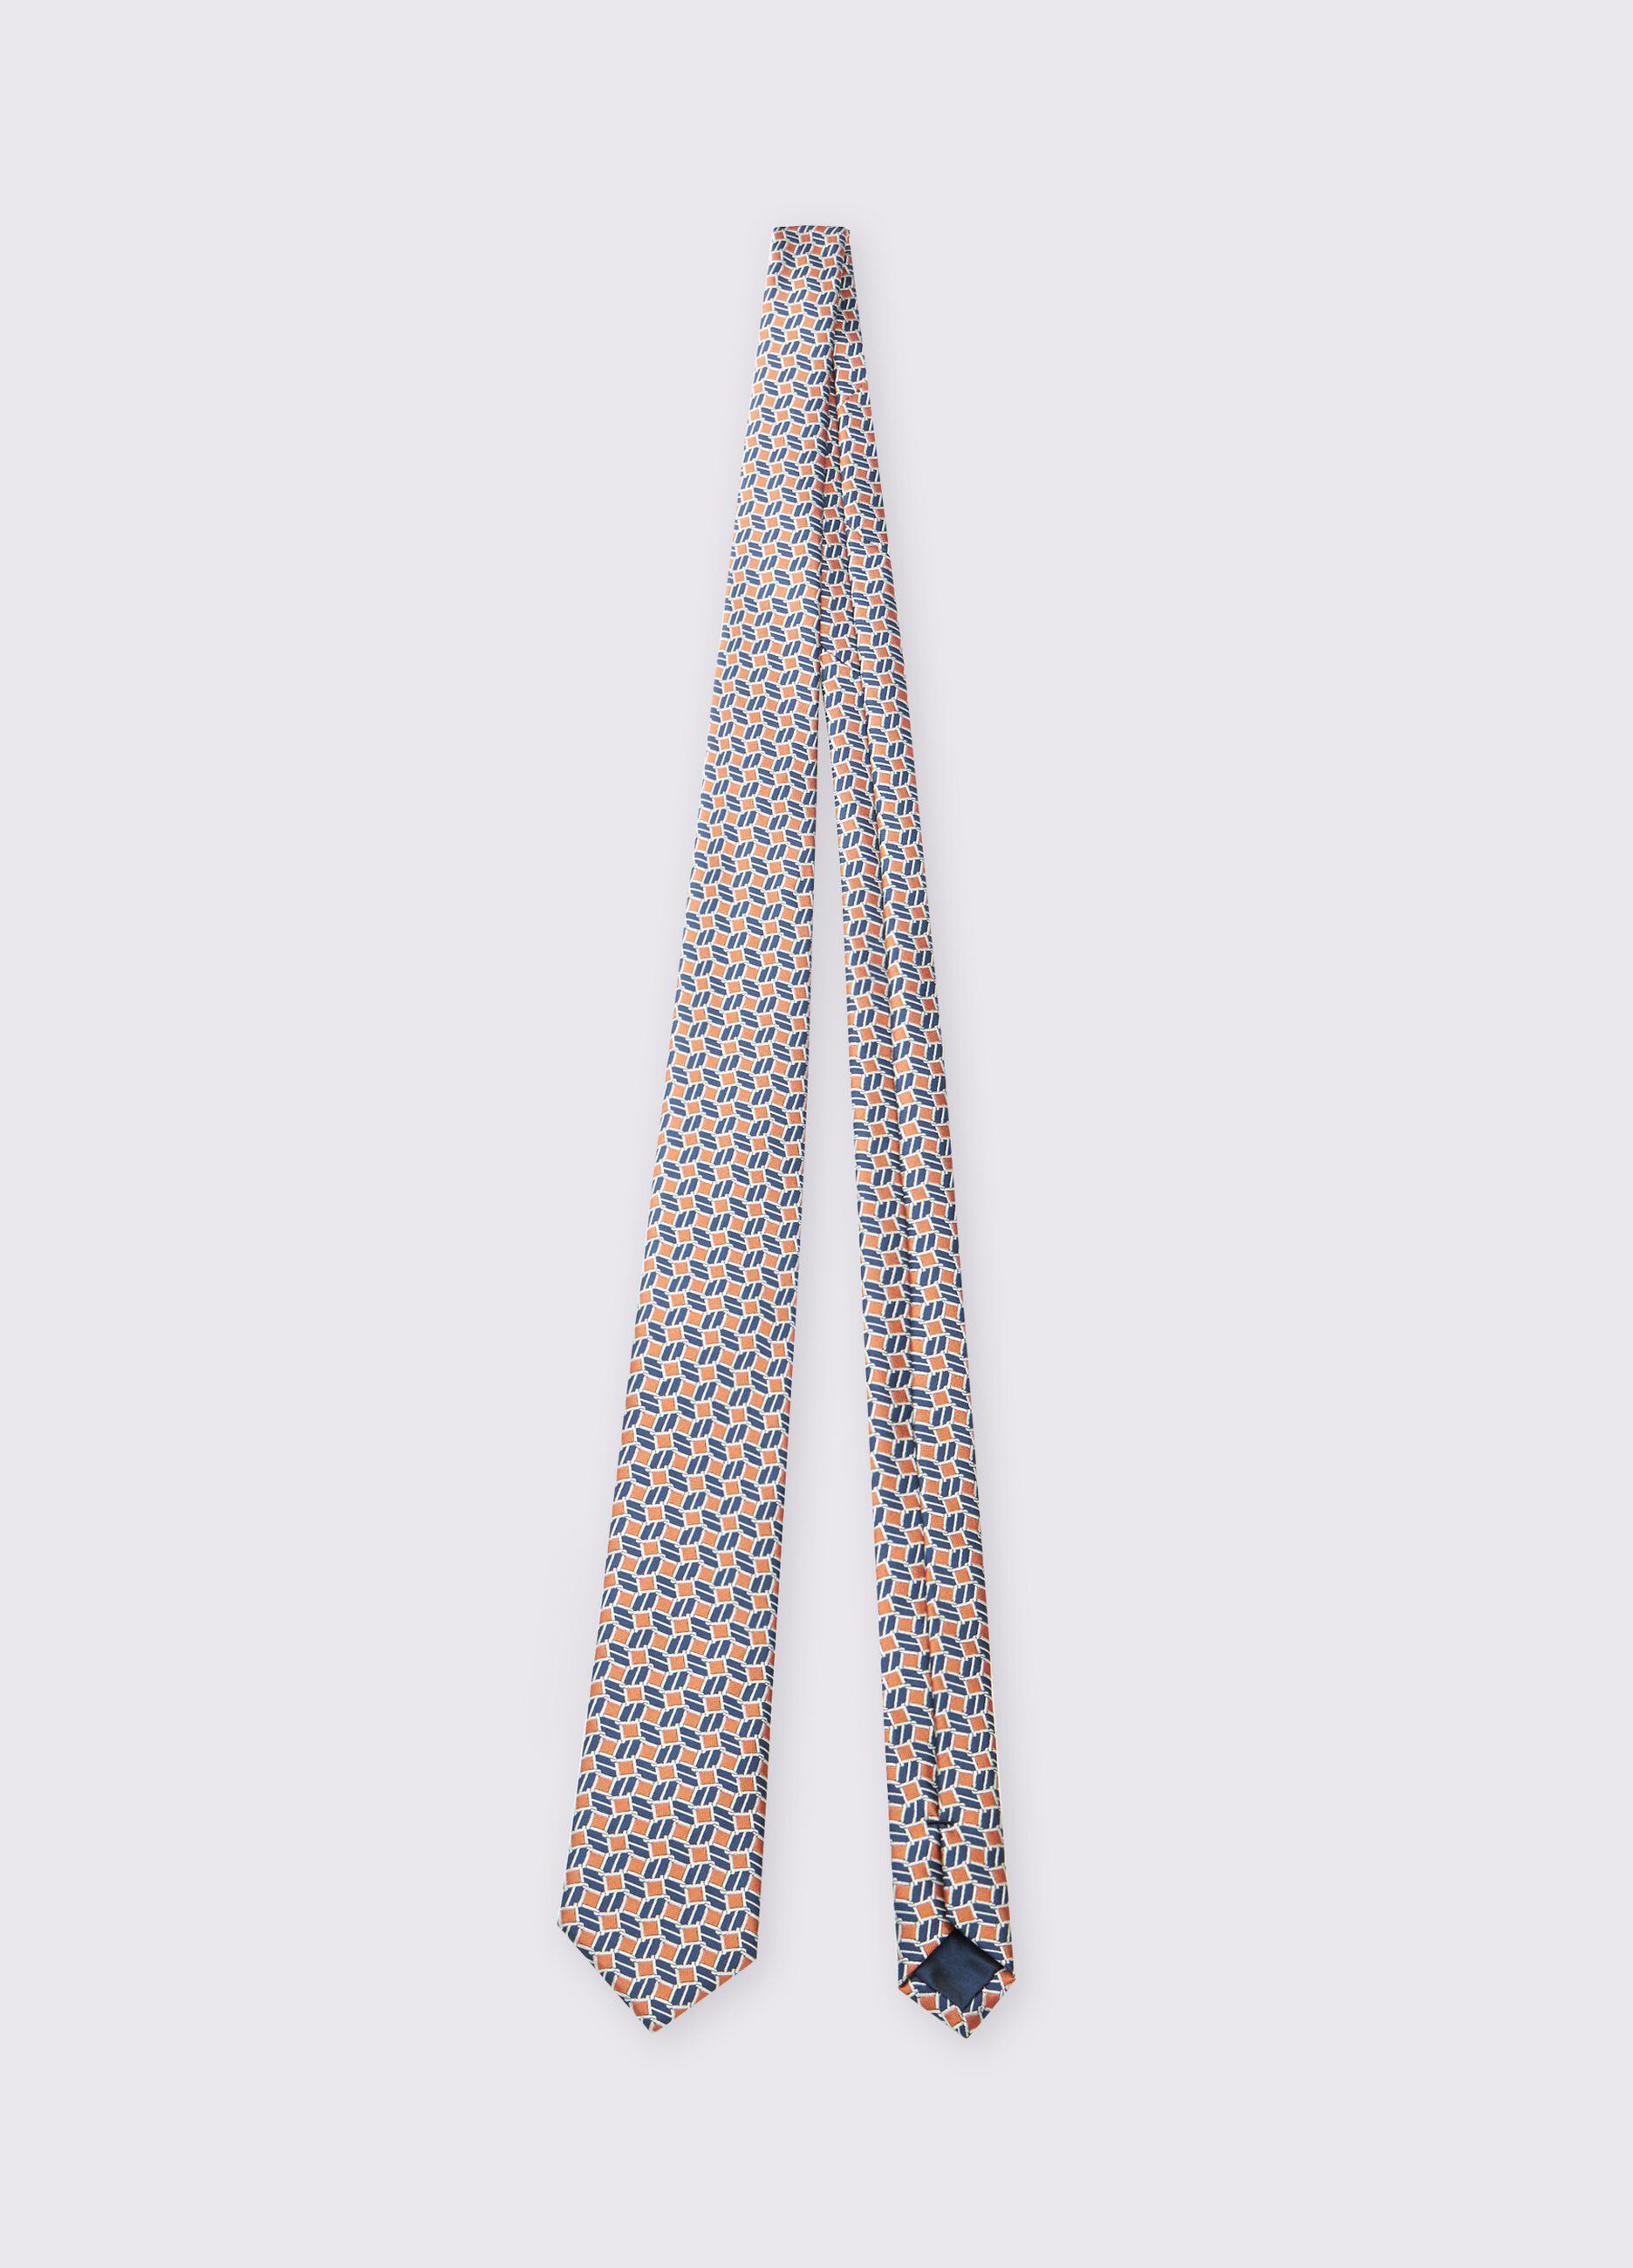 Cravatta in tessuto uomo_0